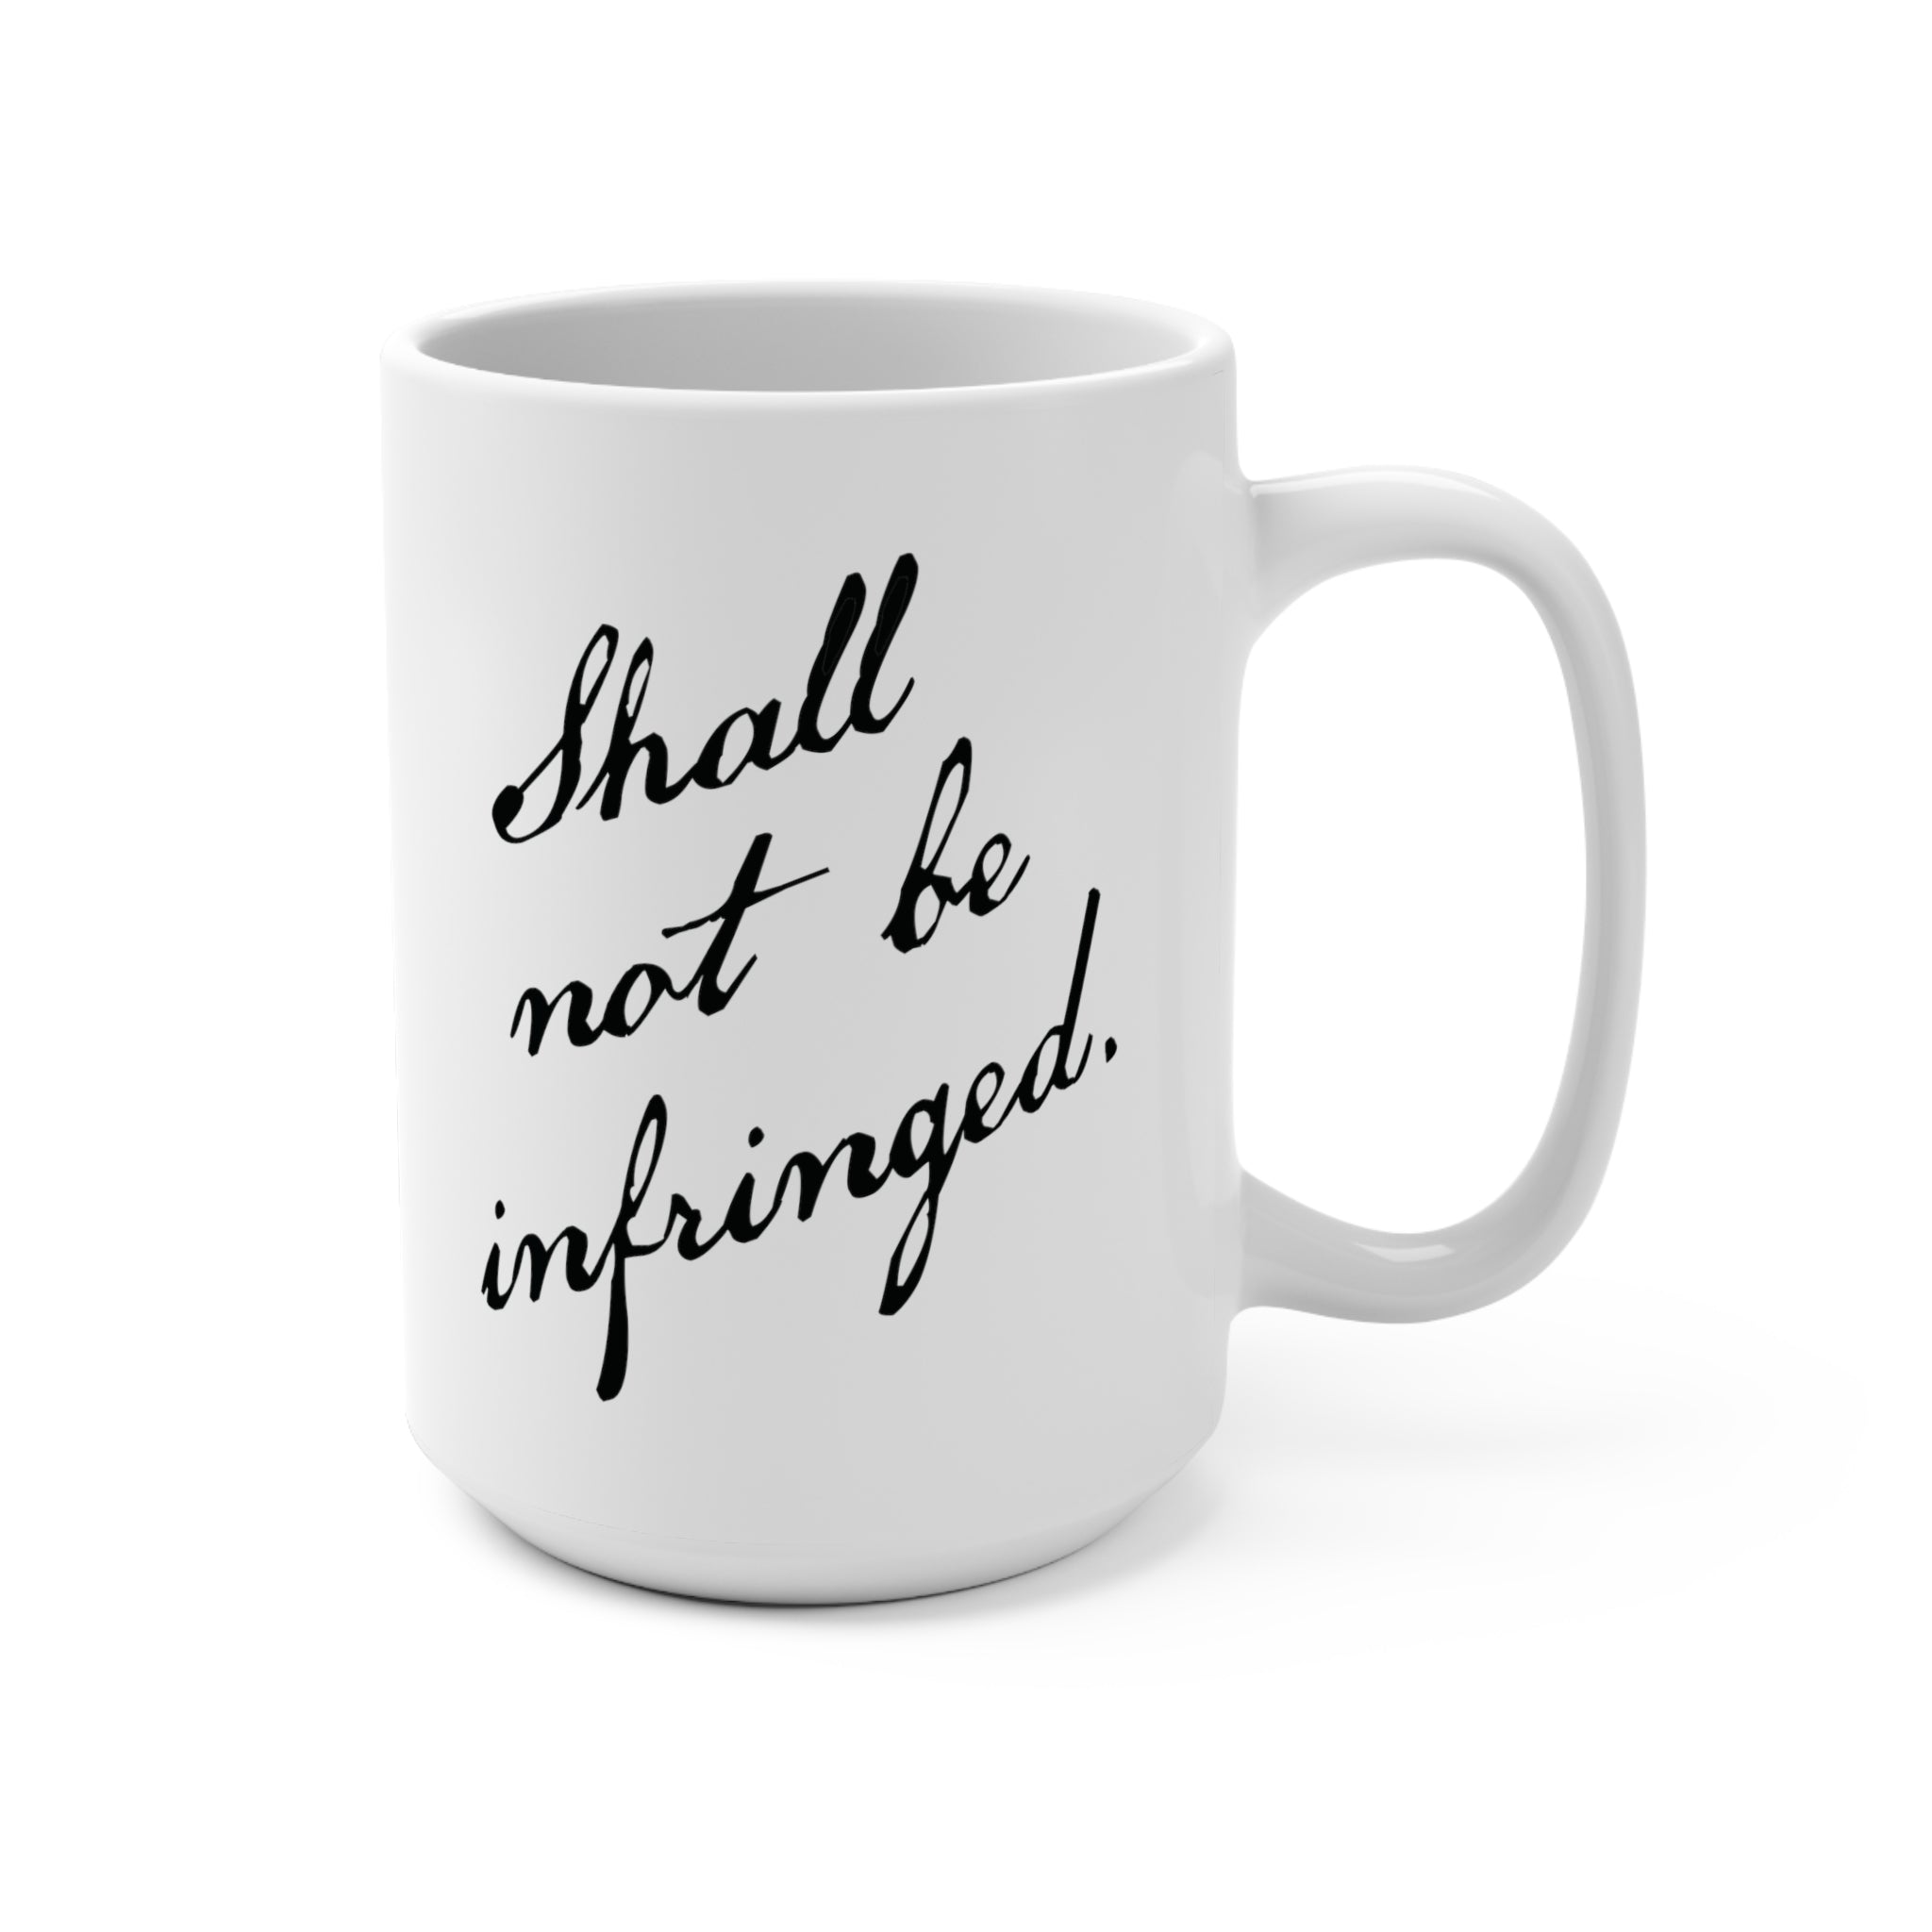 Shall Not Be Infringed Mug (15oz)